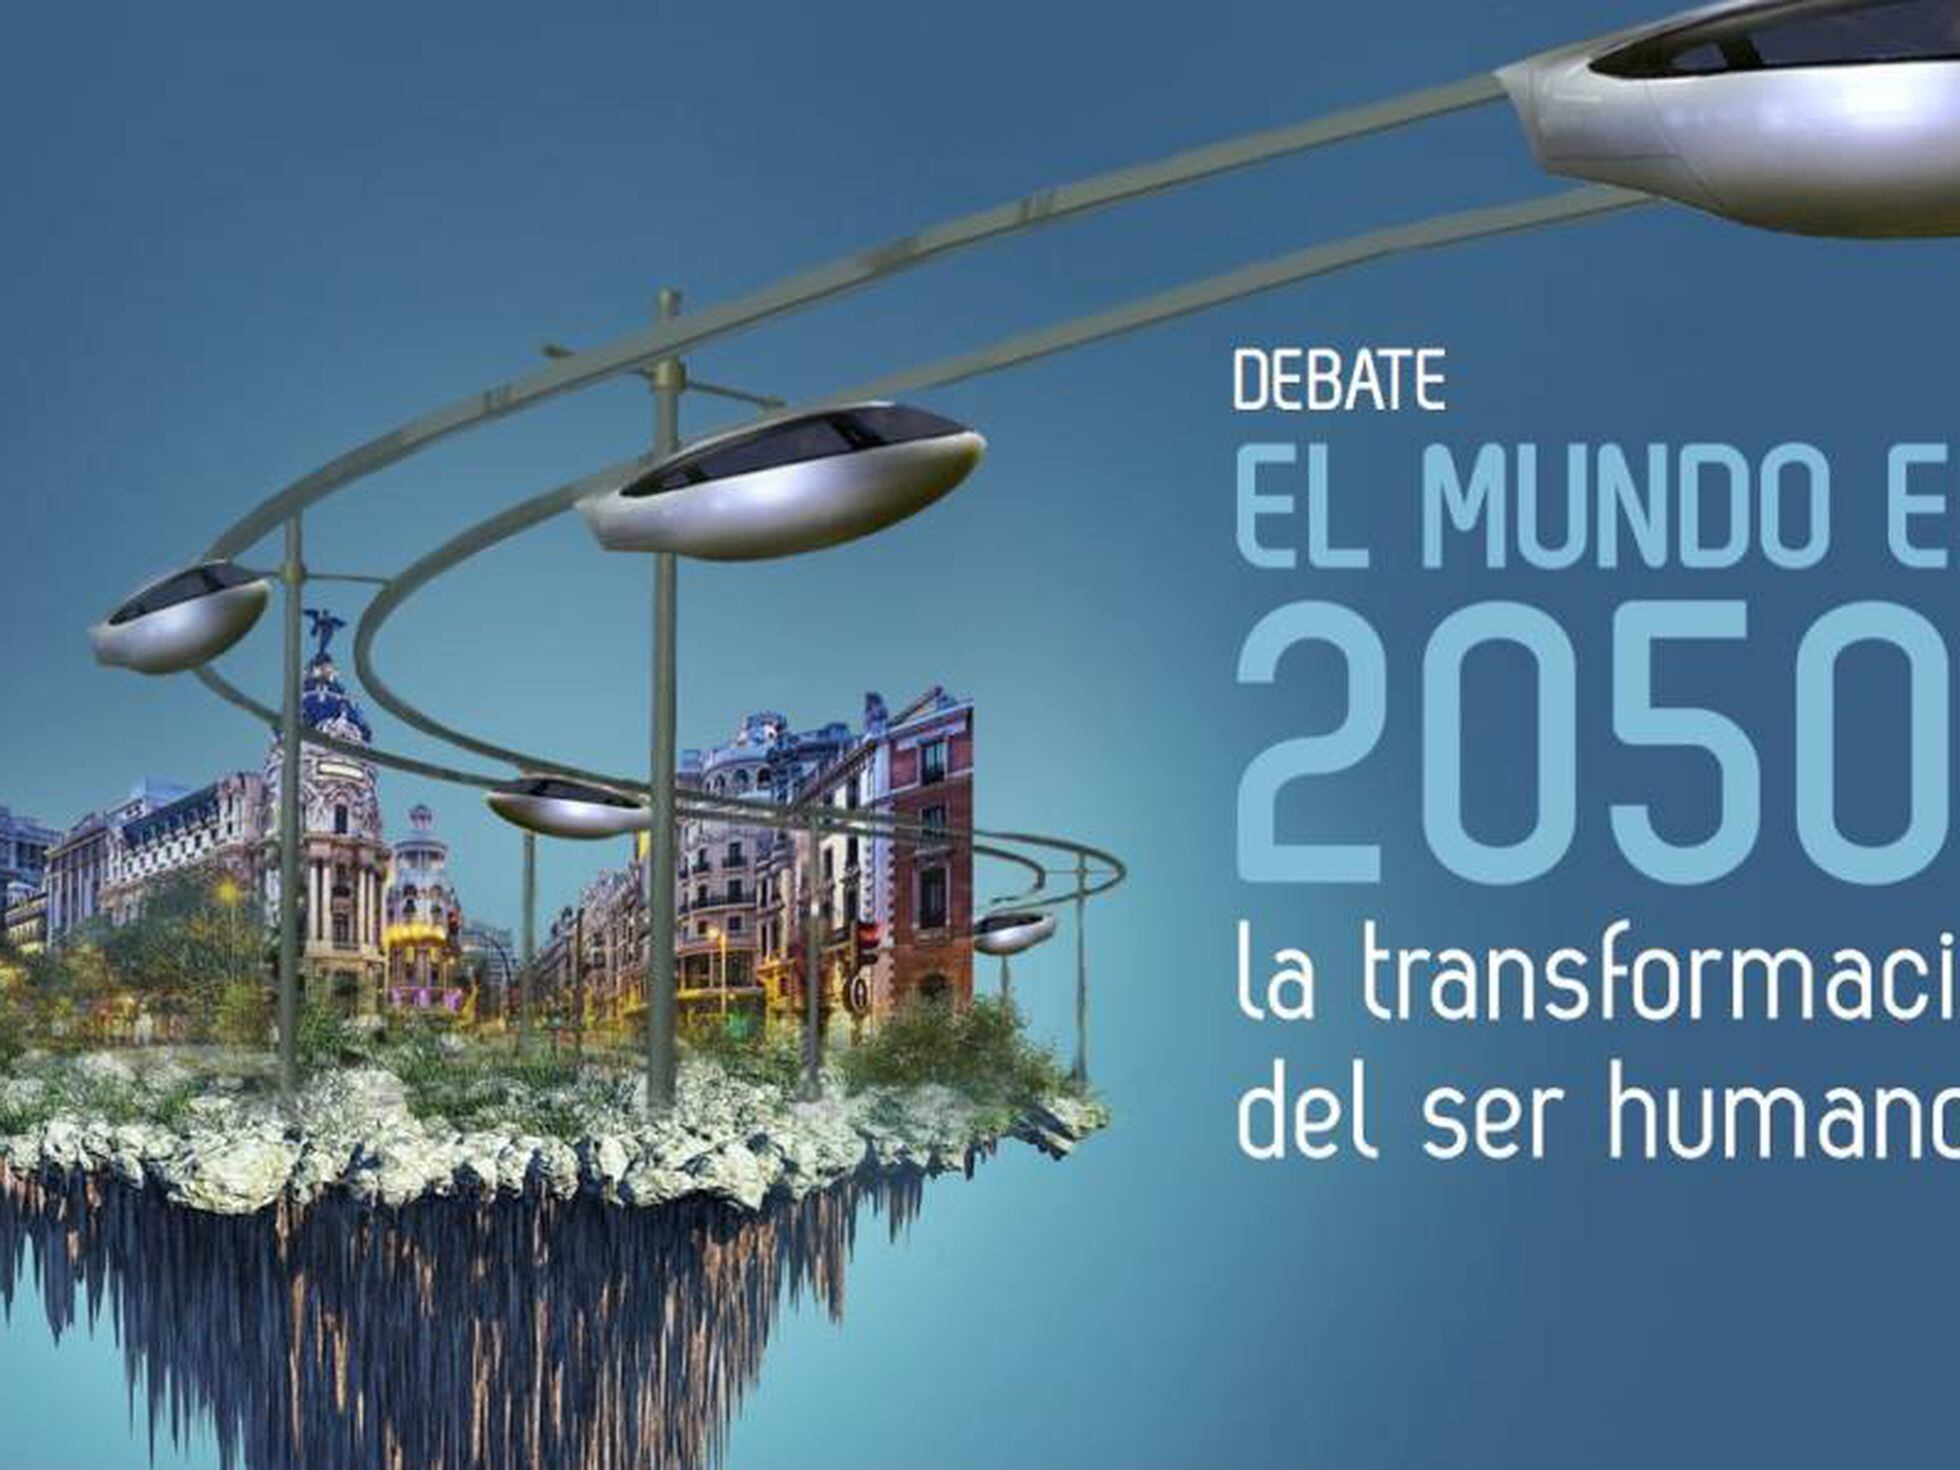 El mundo en 2050', un evento para debatir el destino del ser humano |  Ciencia | EL PAÍS